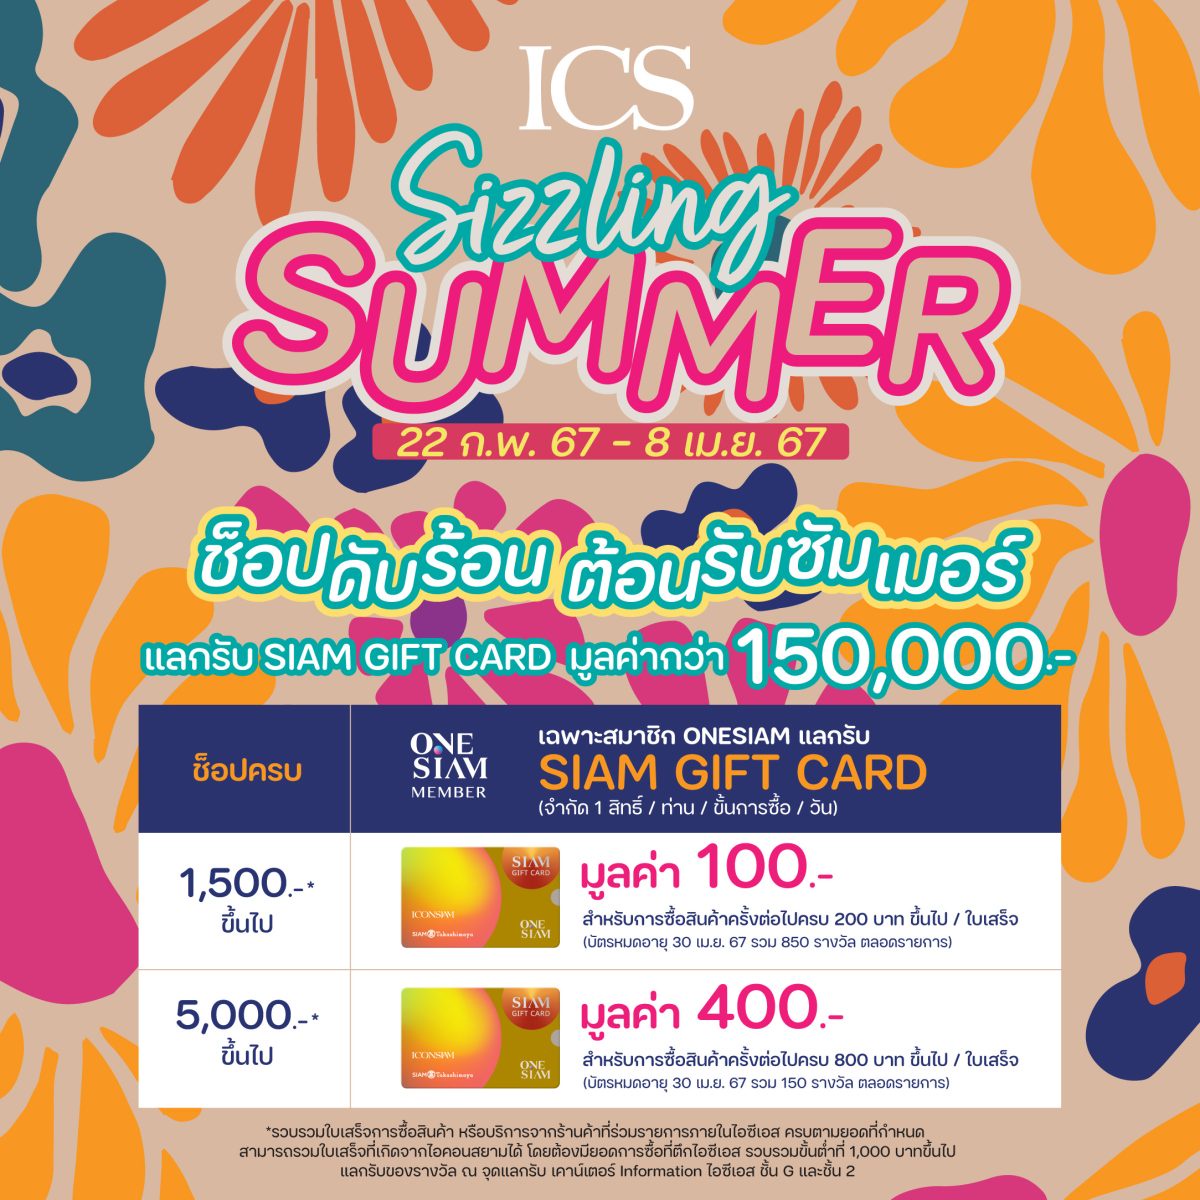 ไอซีเอส จัดแคมเปญ ICS Sizzling Summer ช้อปดับร้อน ต้อนรับซัมเมอร์ แลกรับ SIAM GIFT CARD รวมมูลค่า 1.5 แสนบาท ตั้งแต่วันนี้ - 8 เมษายน